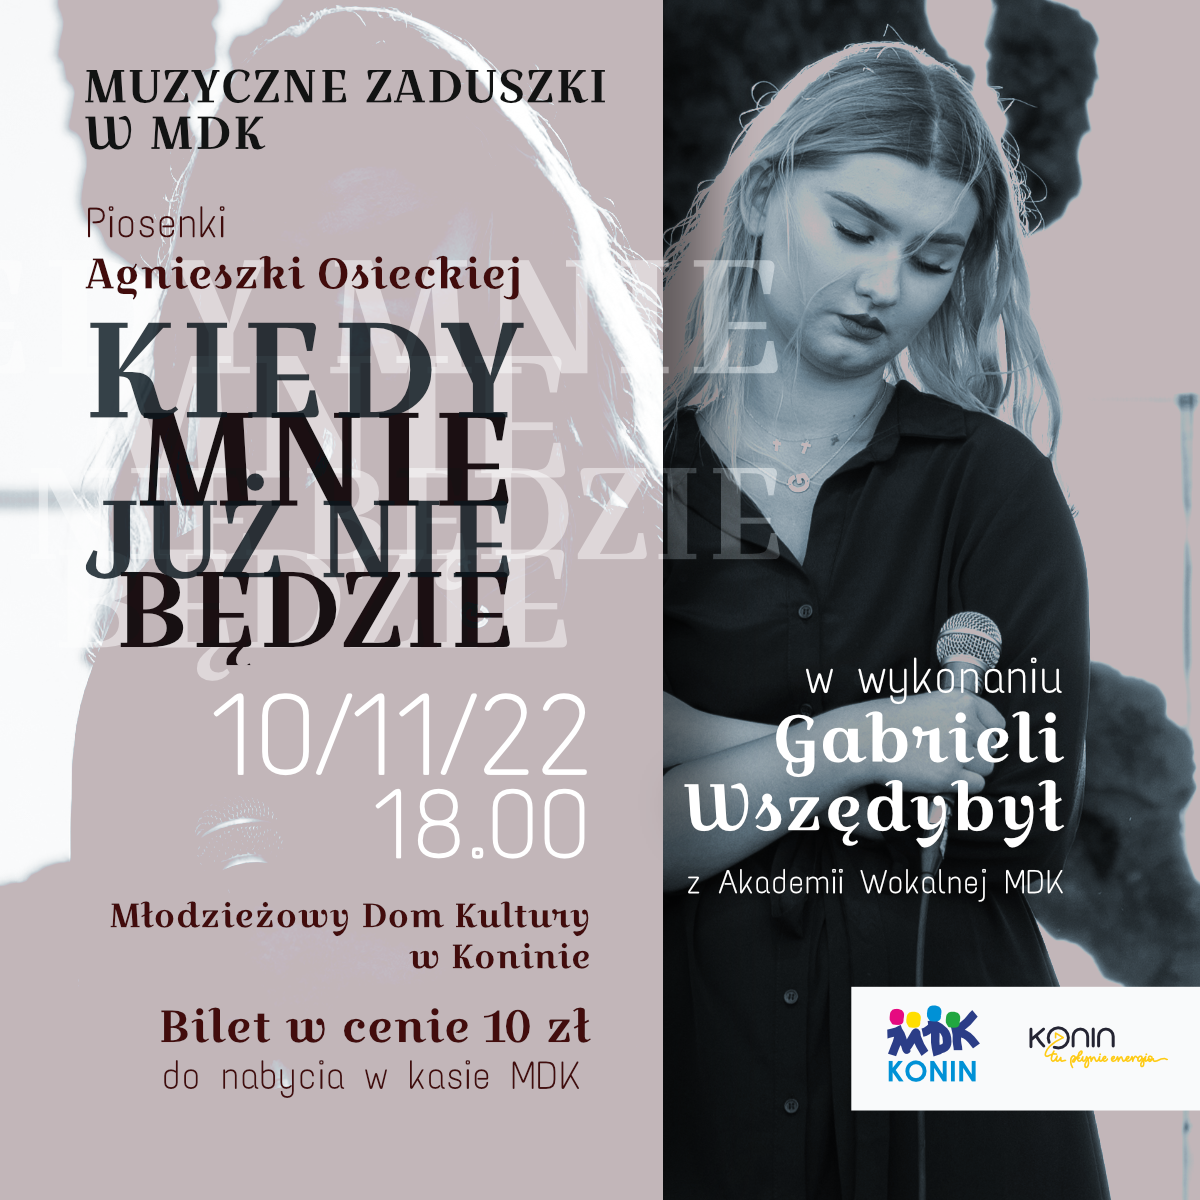 Muzyczne Zaduszki w MDK z piosenkami Agnieszki Osieckiej